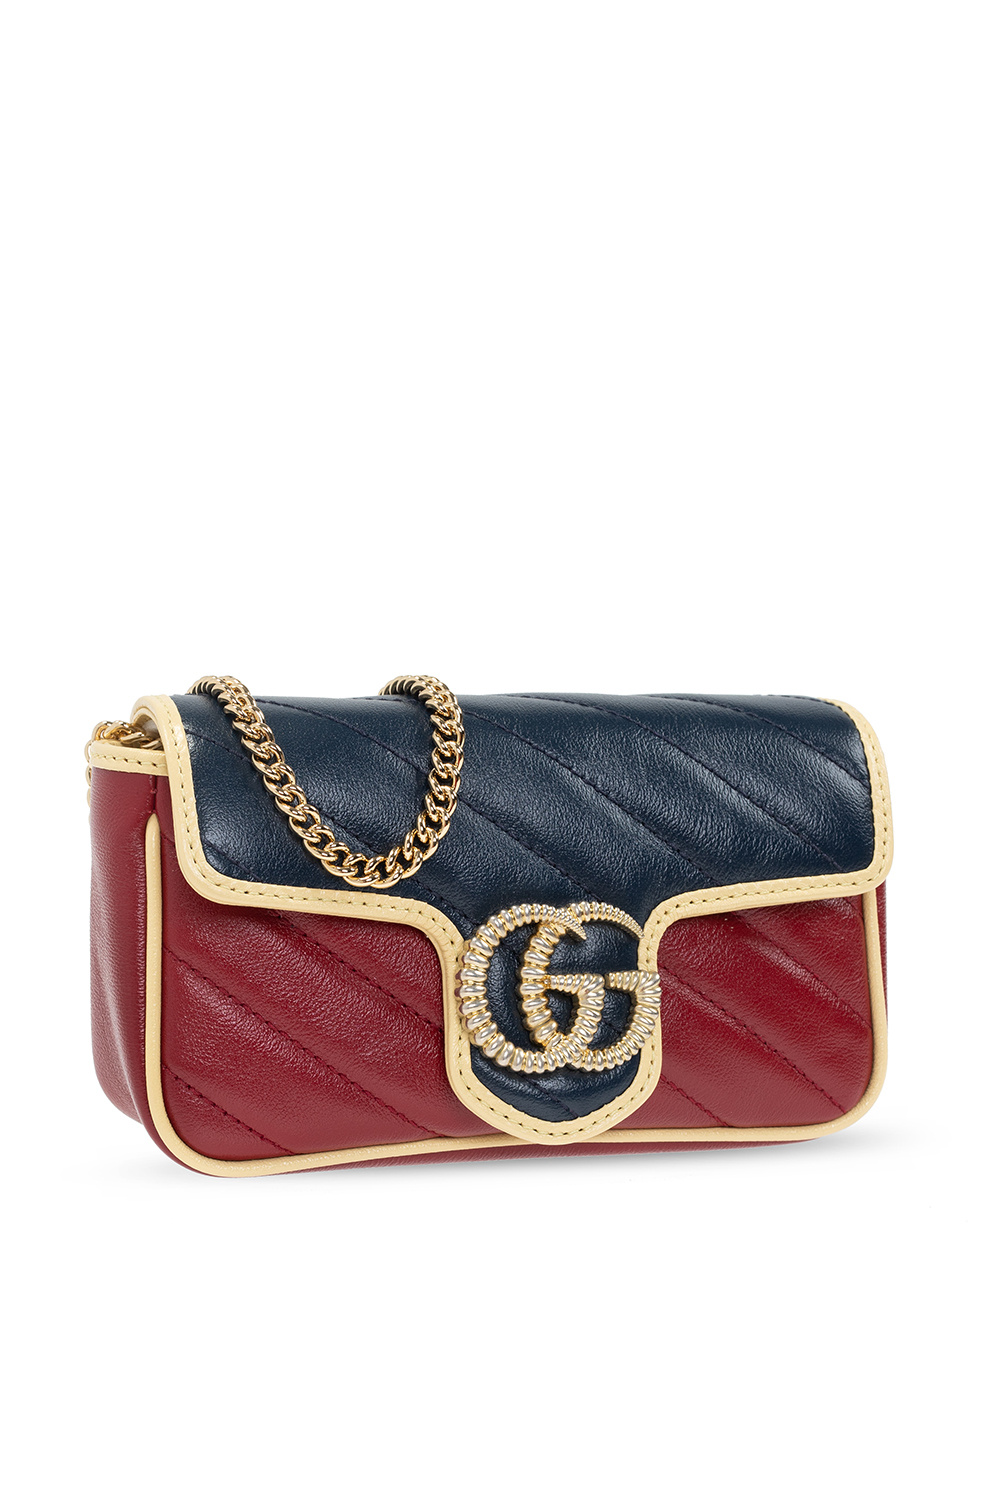 Gucci Dionysus Super Mini GG Velvet Shoulder Bag Red